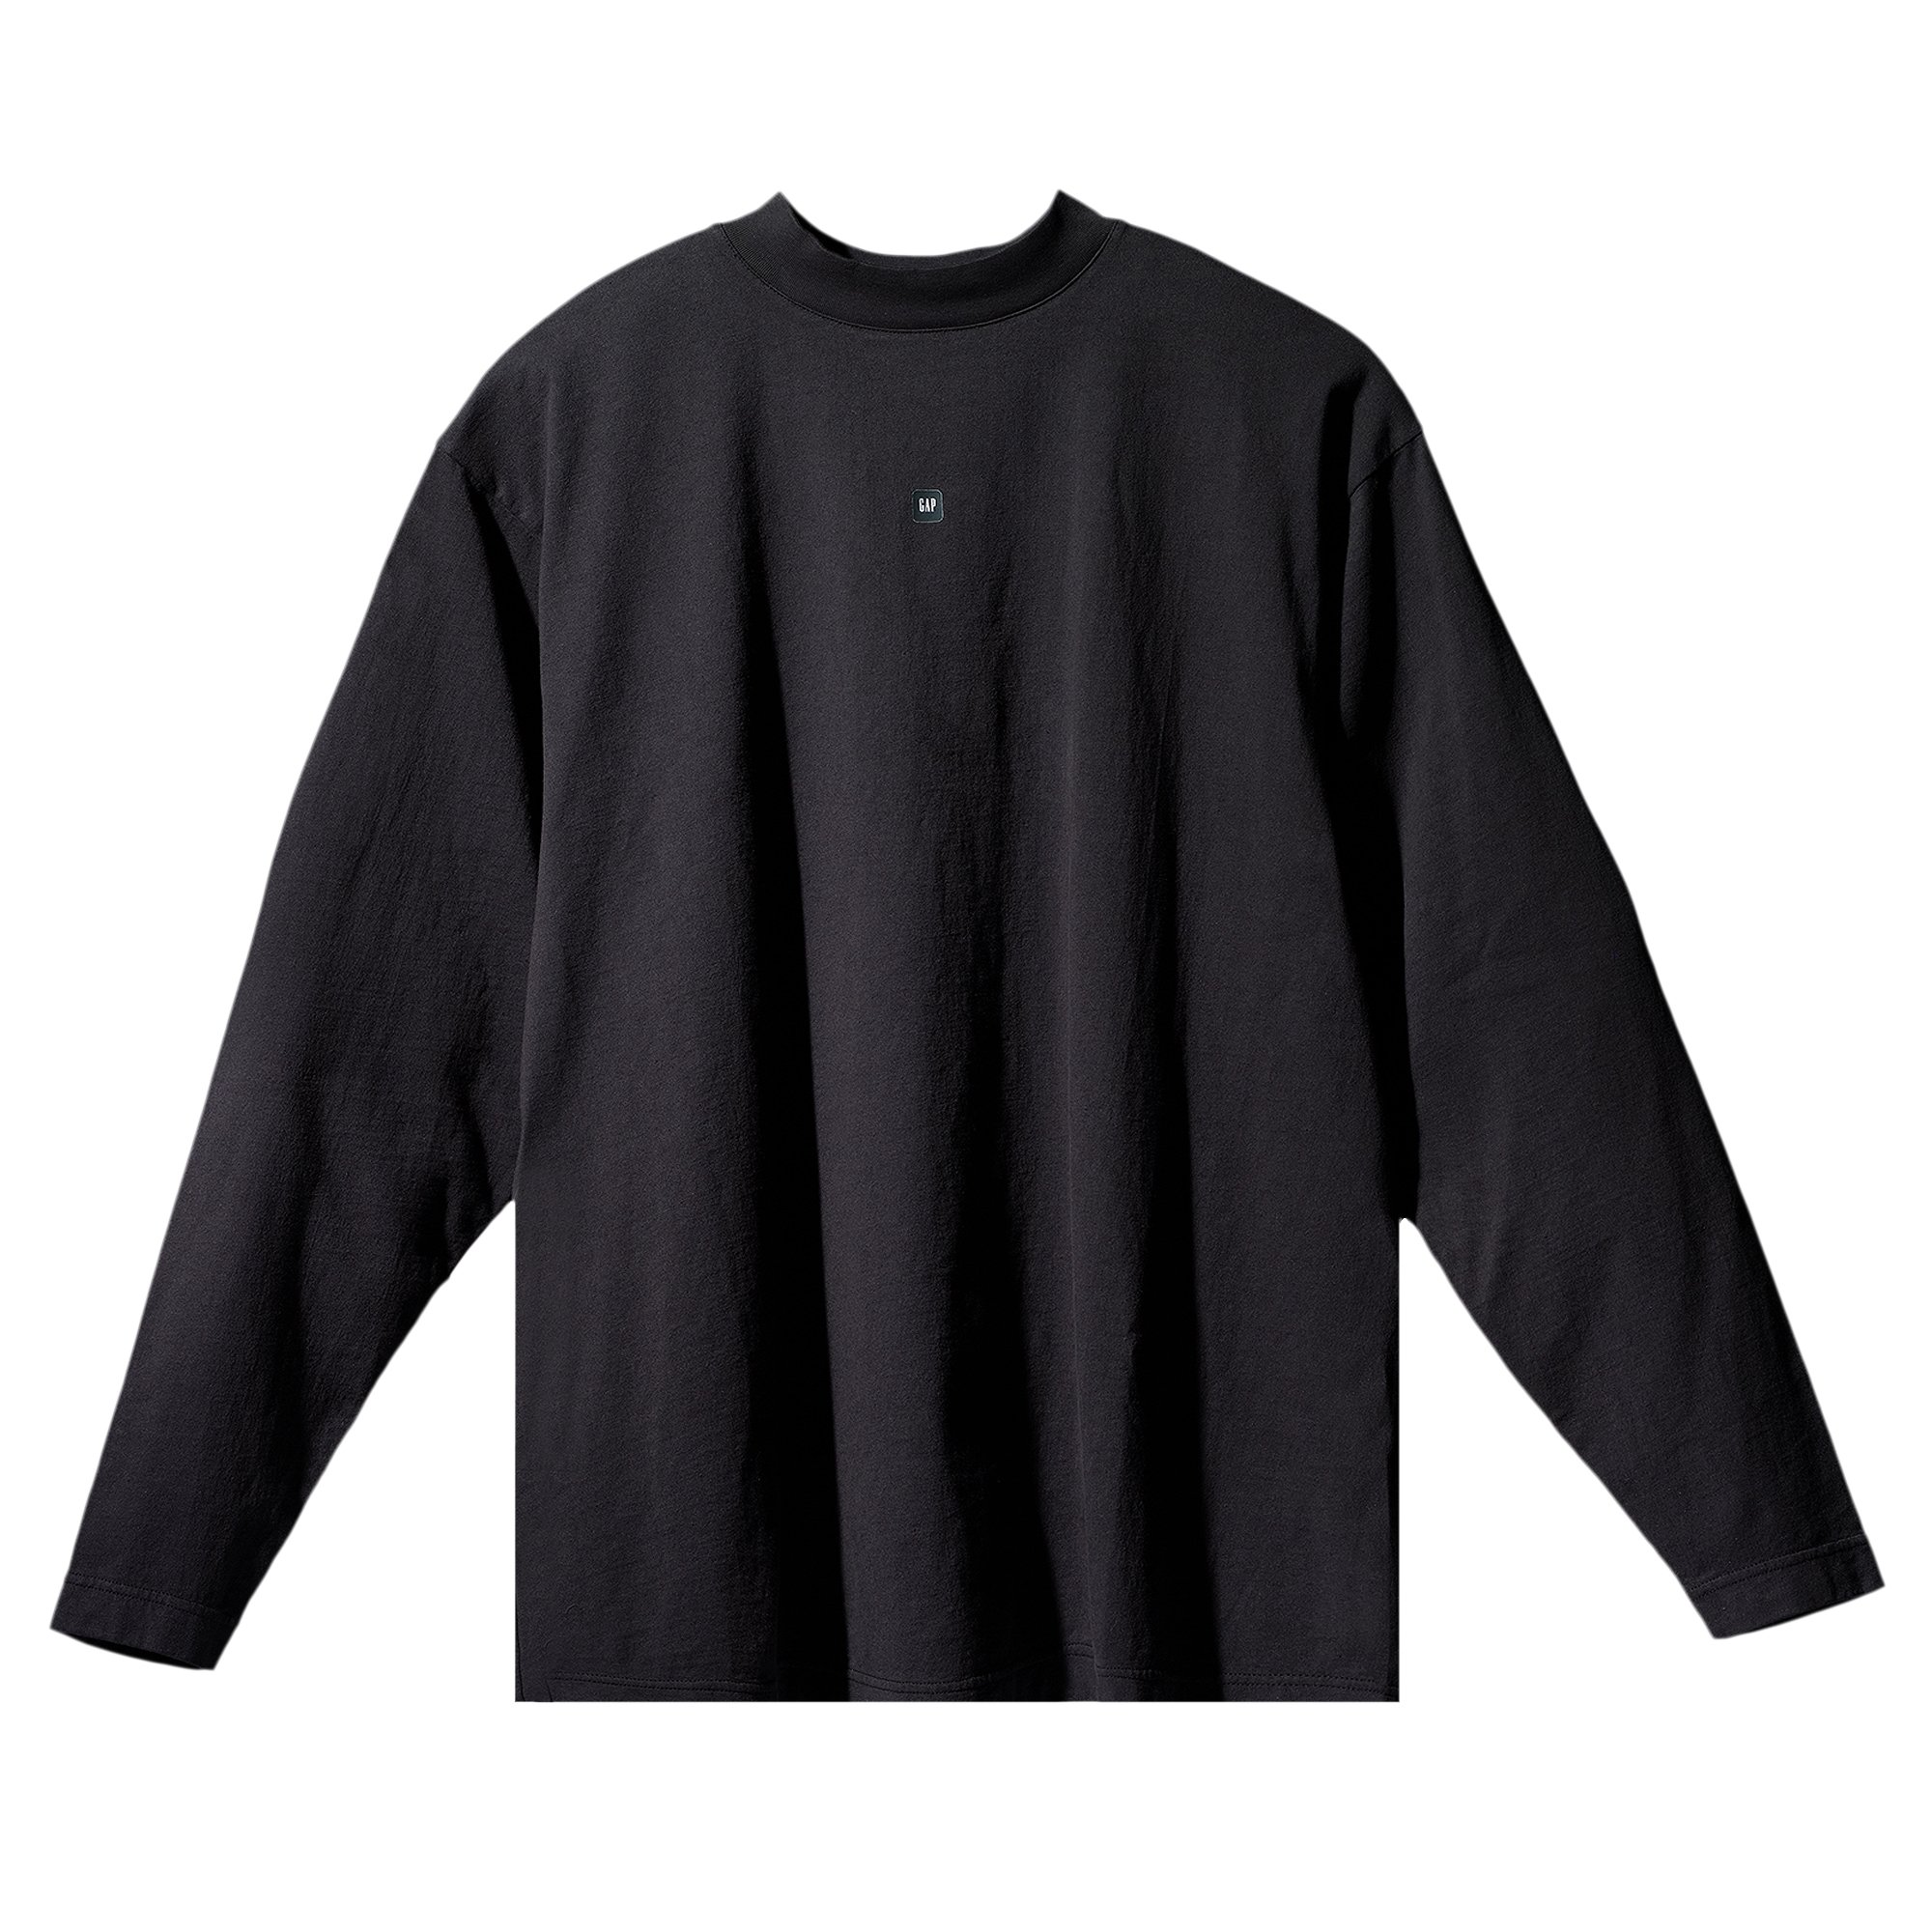 Yeezy Gap Engineered by Balenciaga Long-Sleeve Tee 'Black'